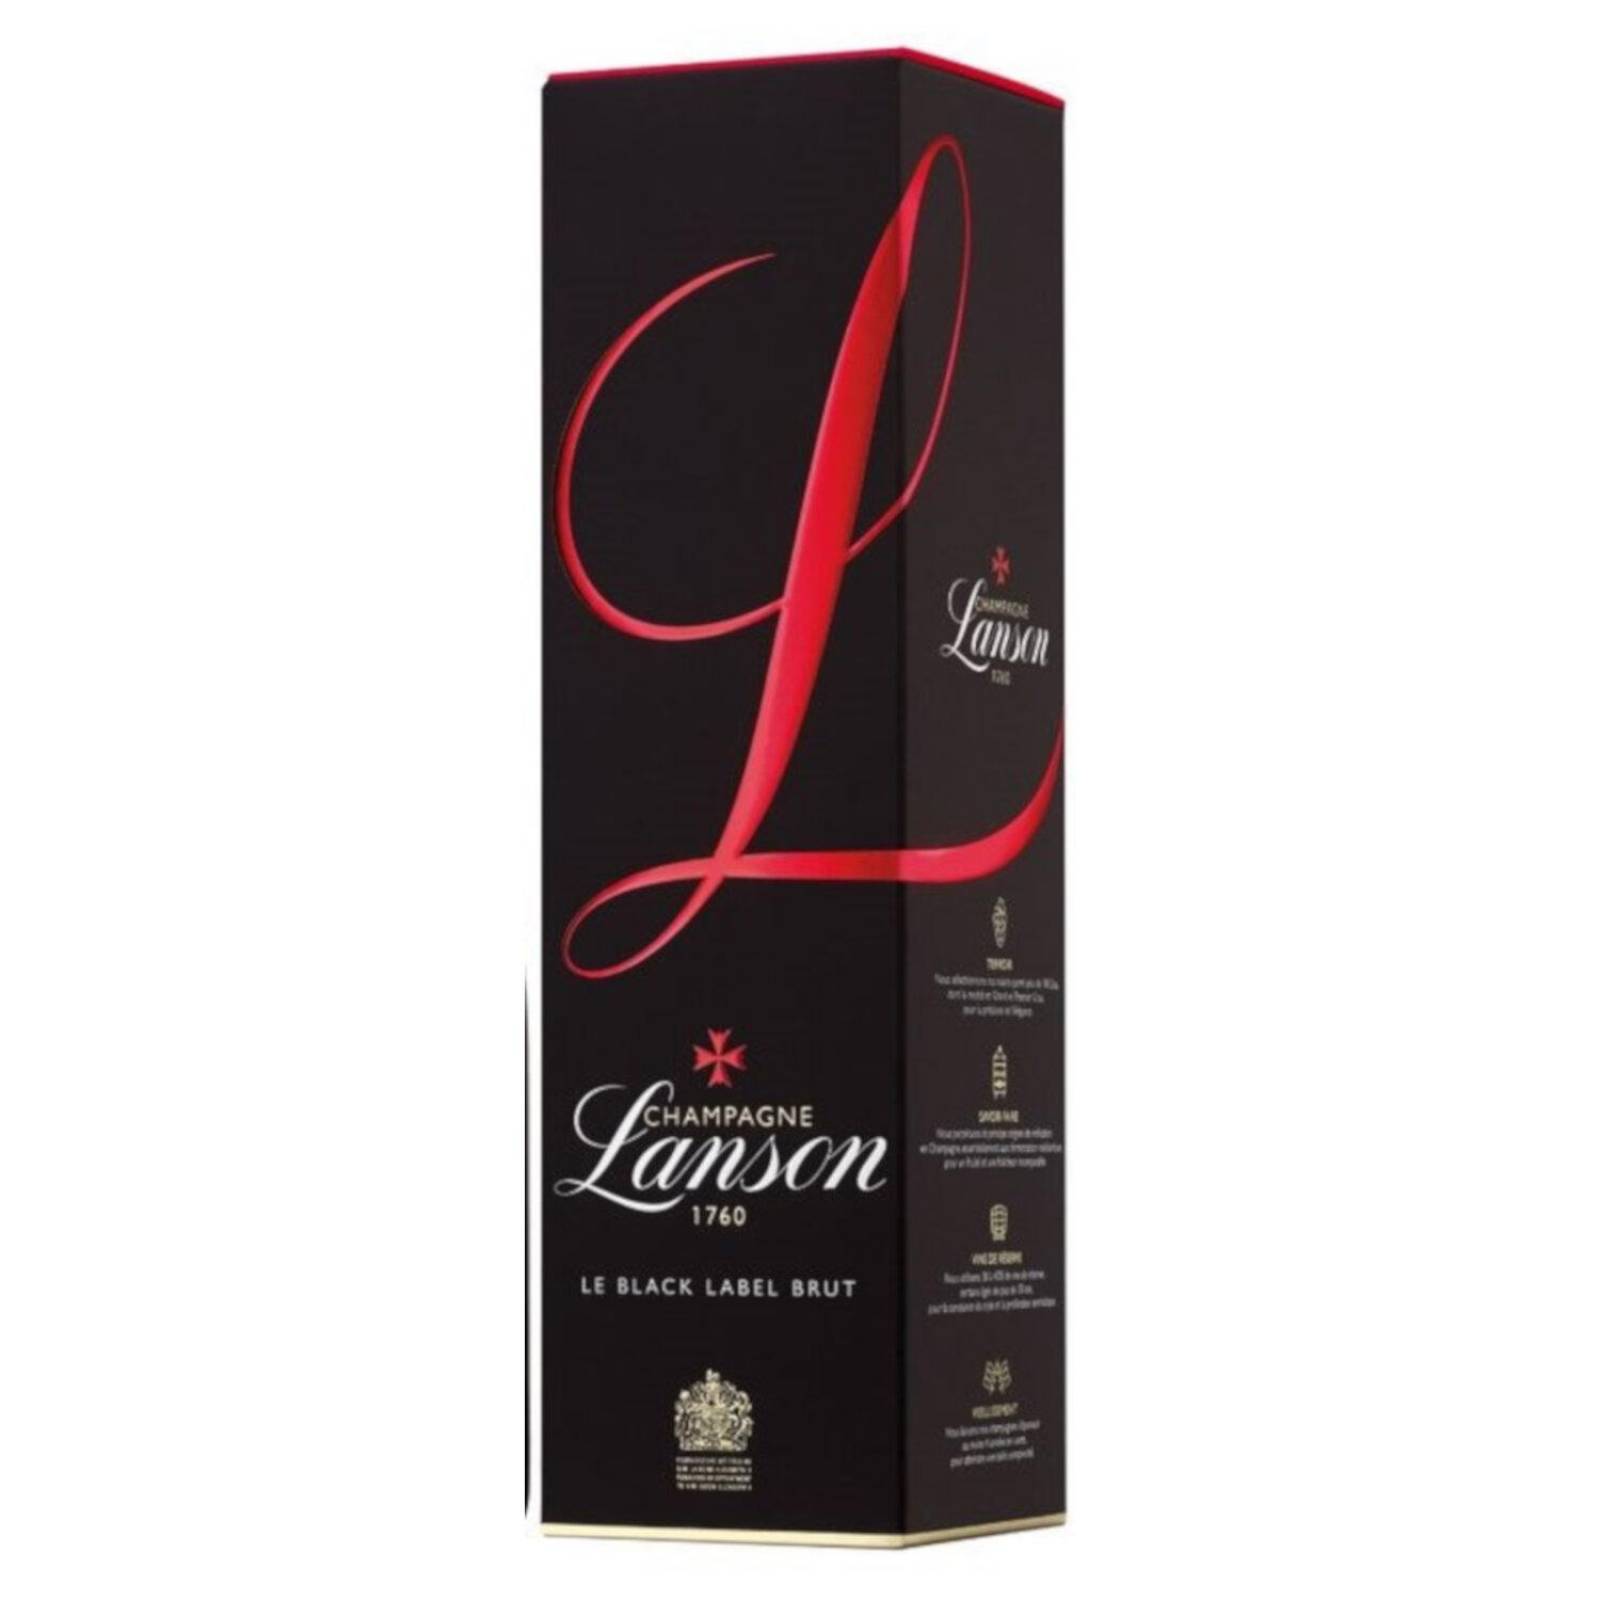 Champagne Lanson 1760 Le Black Label Brut 750 ml 